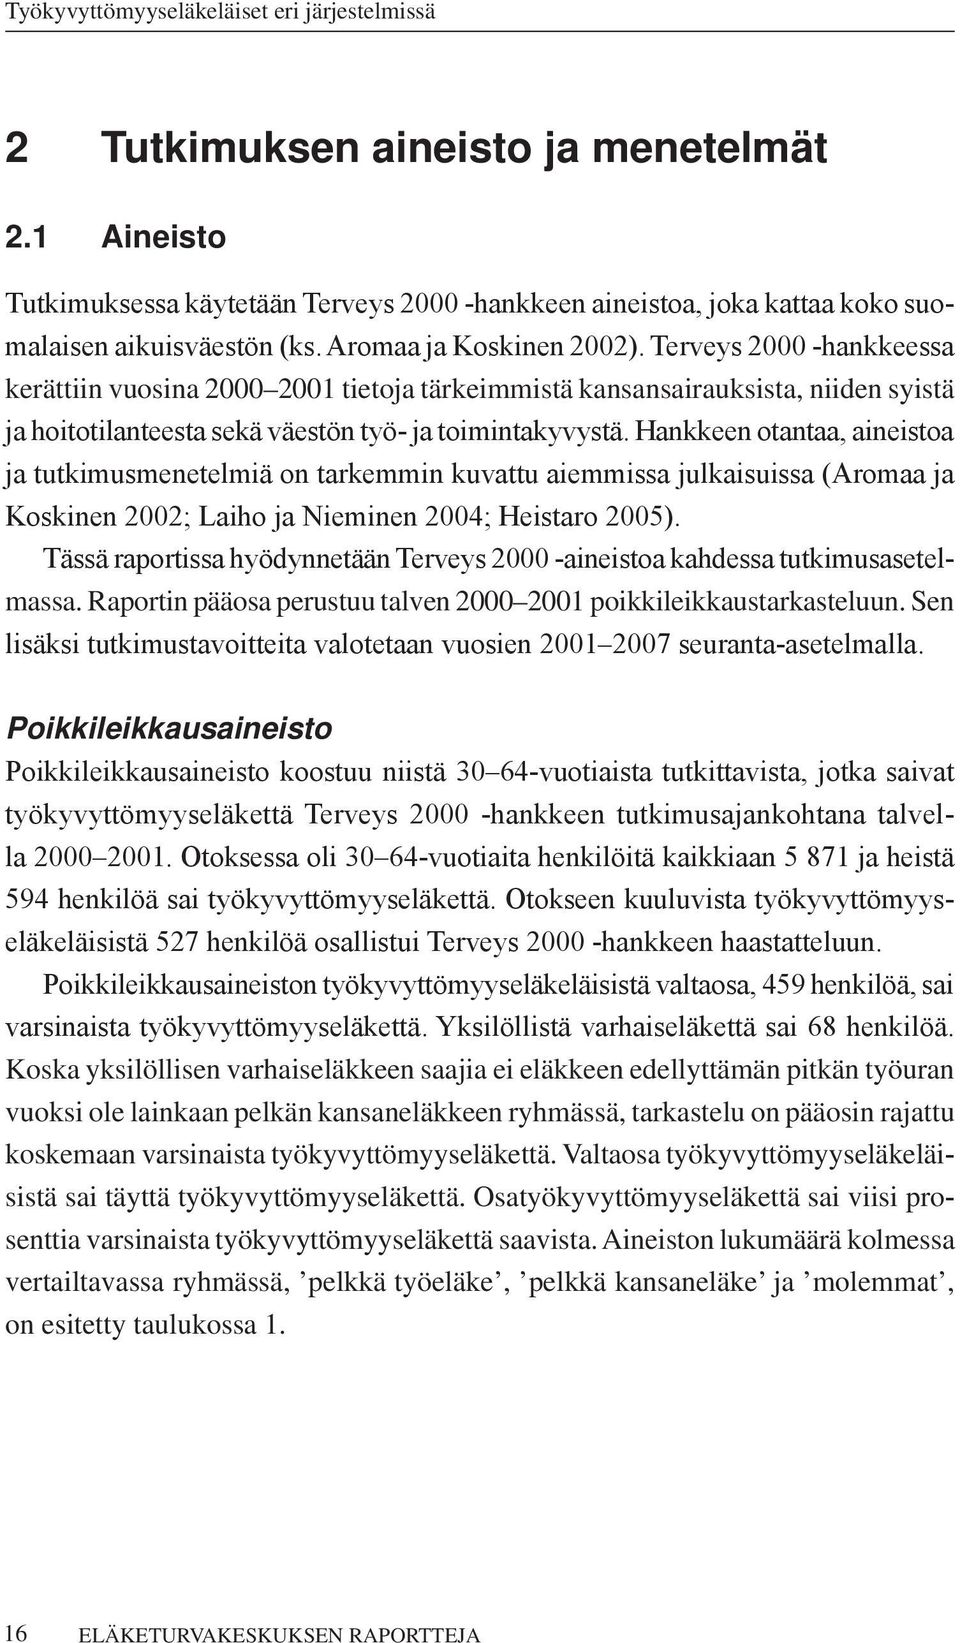 Hankkeen otantaa, aineistoa ja tutkimusmenetelmiä on tarkemmin kuvattu aiemmissa julkaisuissa (Aromaa ja Koskinen 2002; Laiho ja Nieminen 2004; Heistaro 2005).